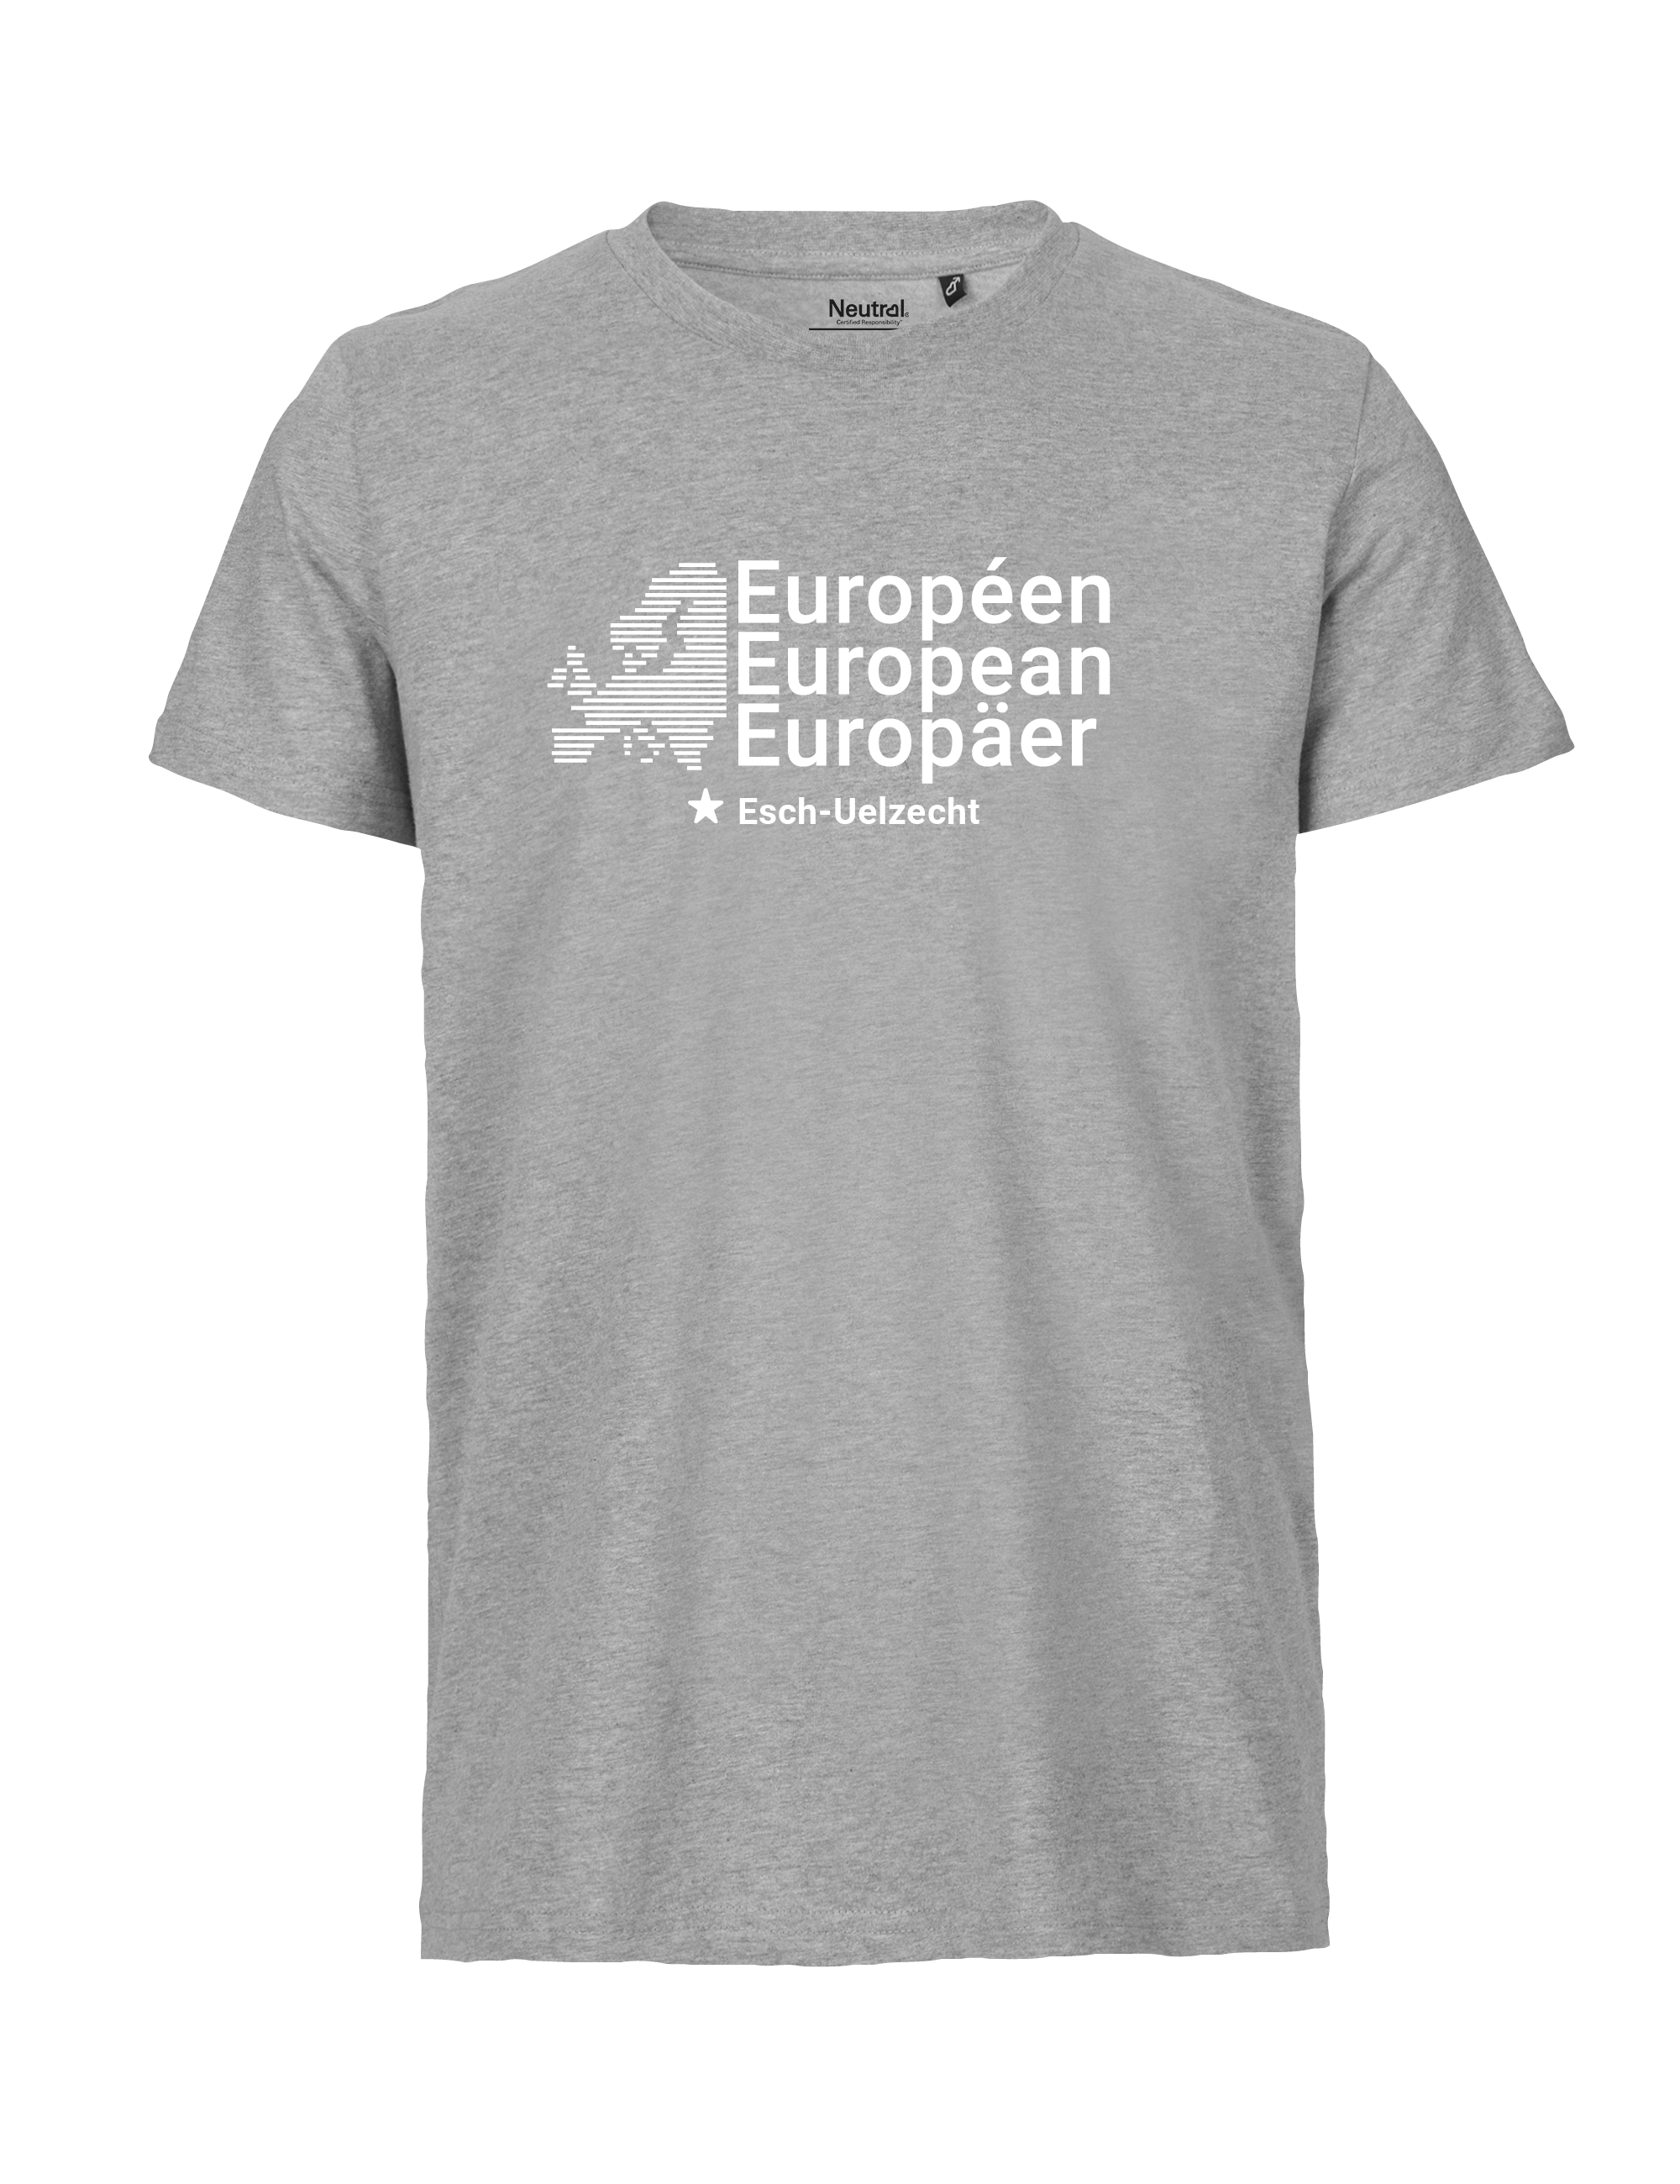 Europe-Emotions_Ansicht_Shirt_Esch-Uelzecht